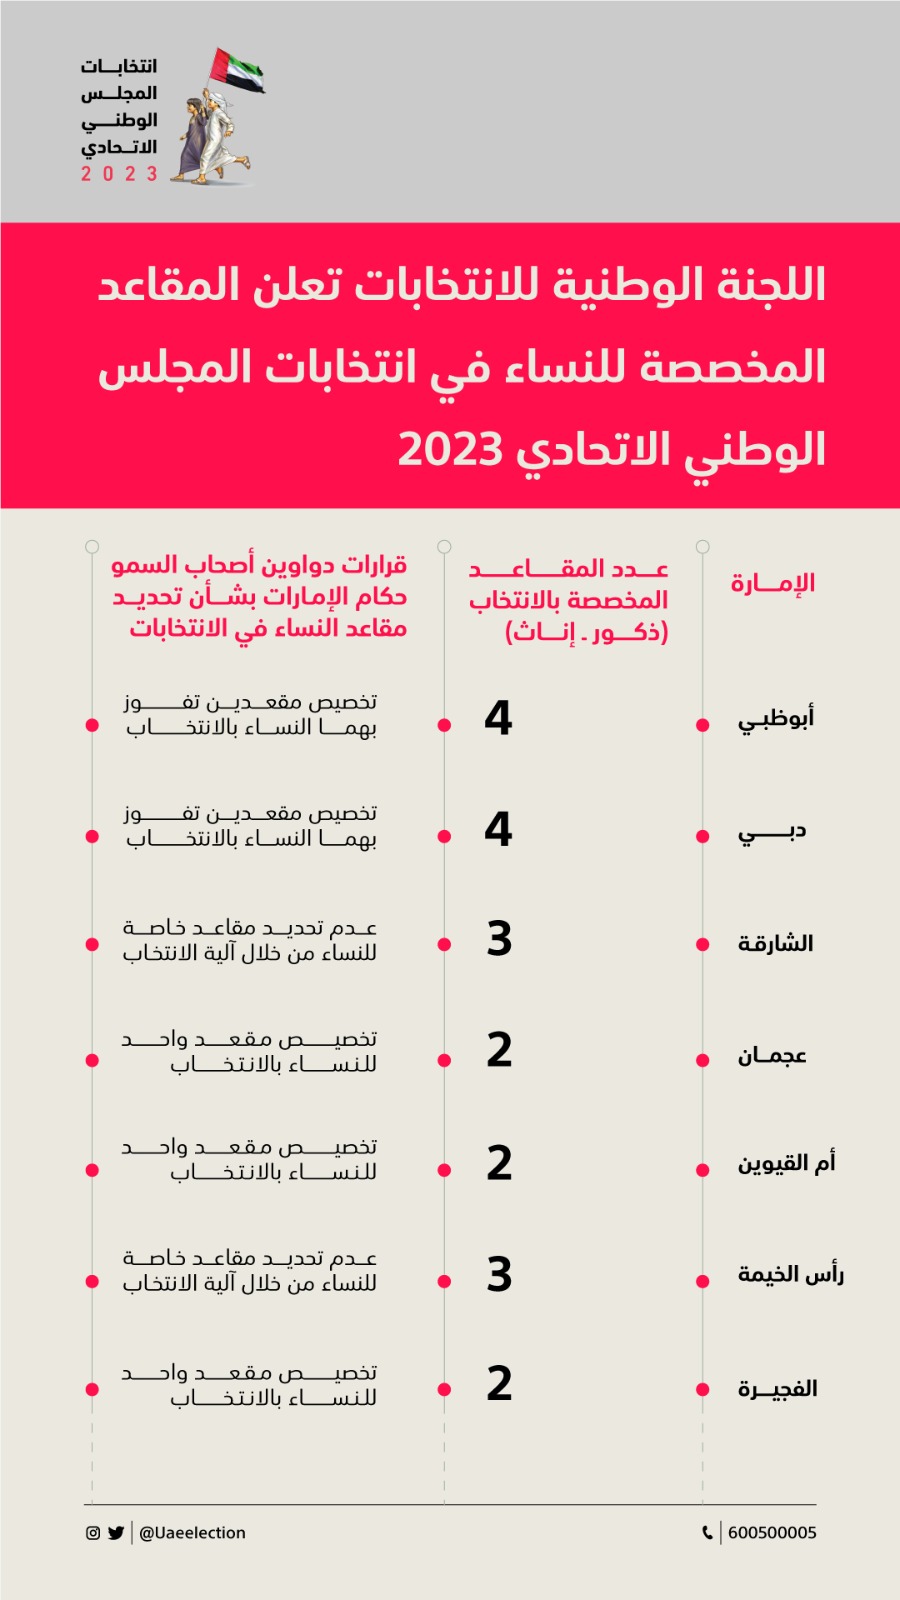 (الوطنية للانتخابات) تعلن المقاعد المخصصة للنساء في انتخابات الوطني 2023